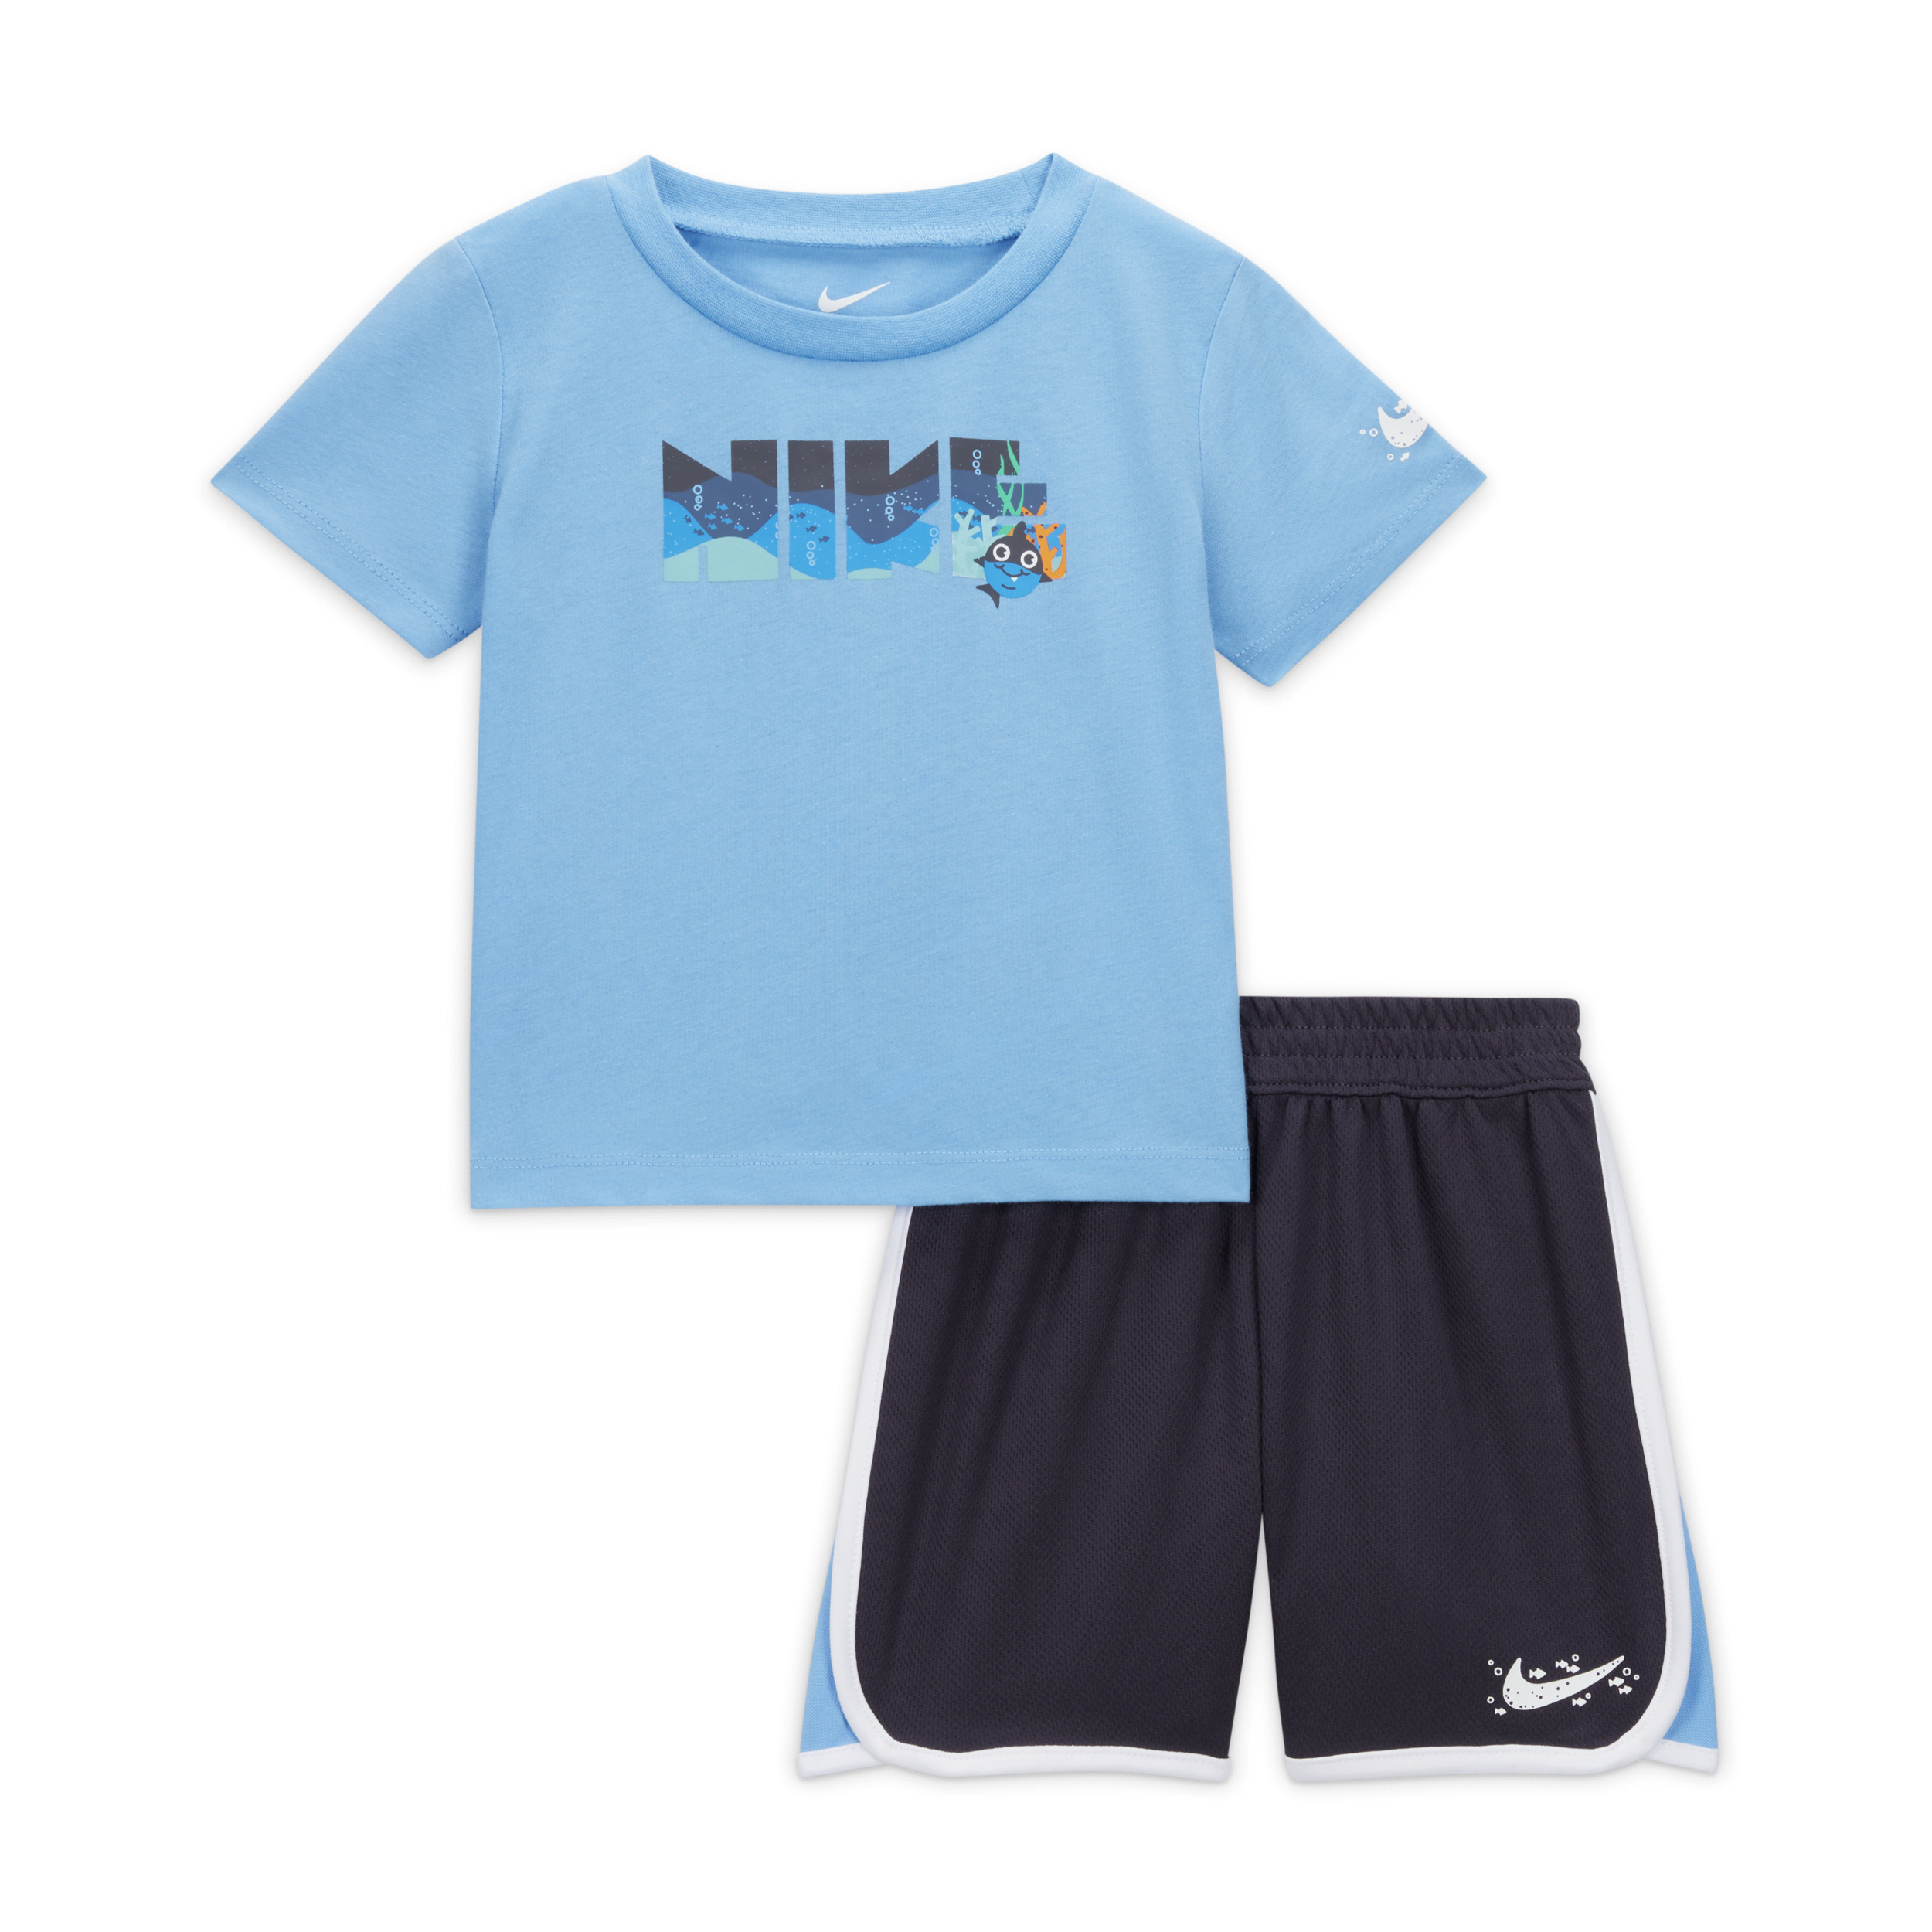 Nike Sportswear Coral Reef Mesh Shorts Set Conjunto de dos piezas - Bebé - Gris